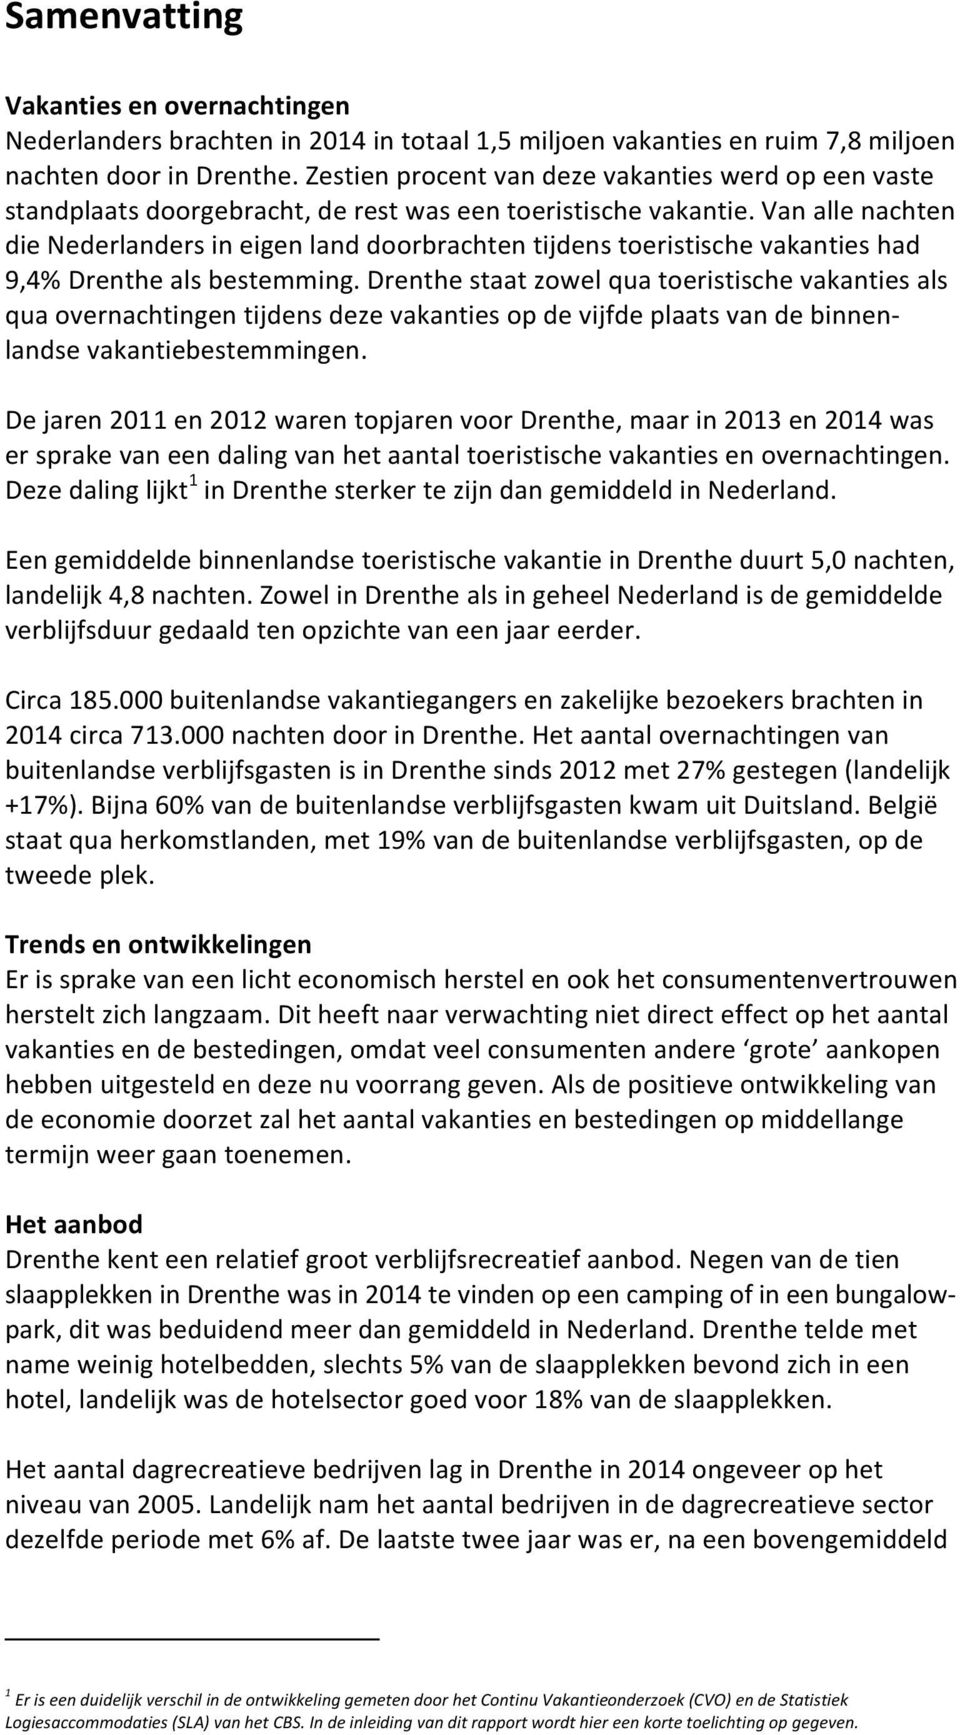 vanallenachten dienederlandersineigenlanddoorbrachtentijdenstoeristischevakantieshad 9,4%Drenthealsbestemming.